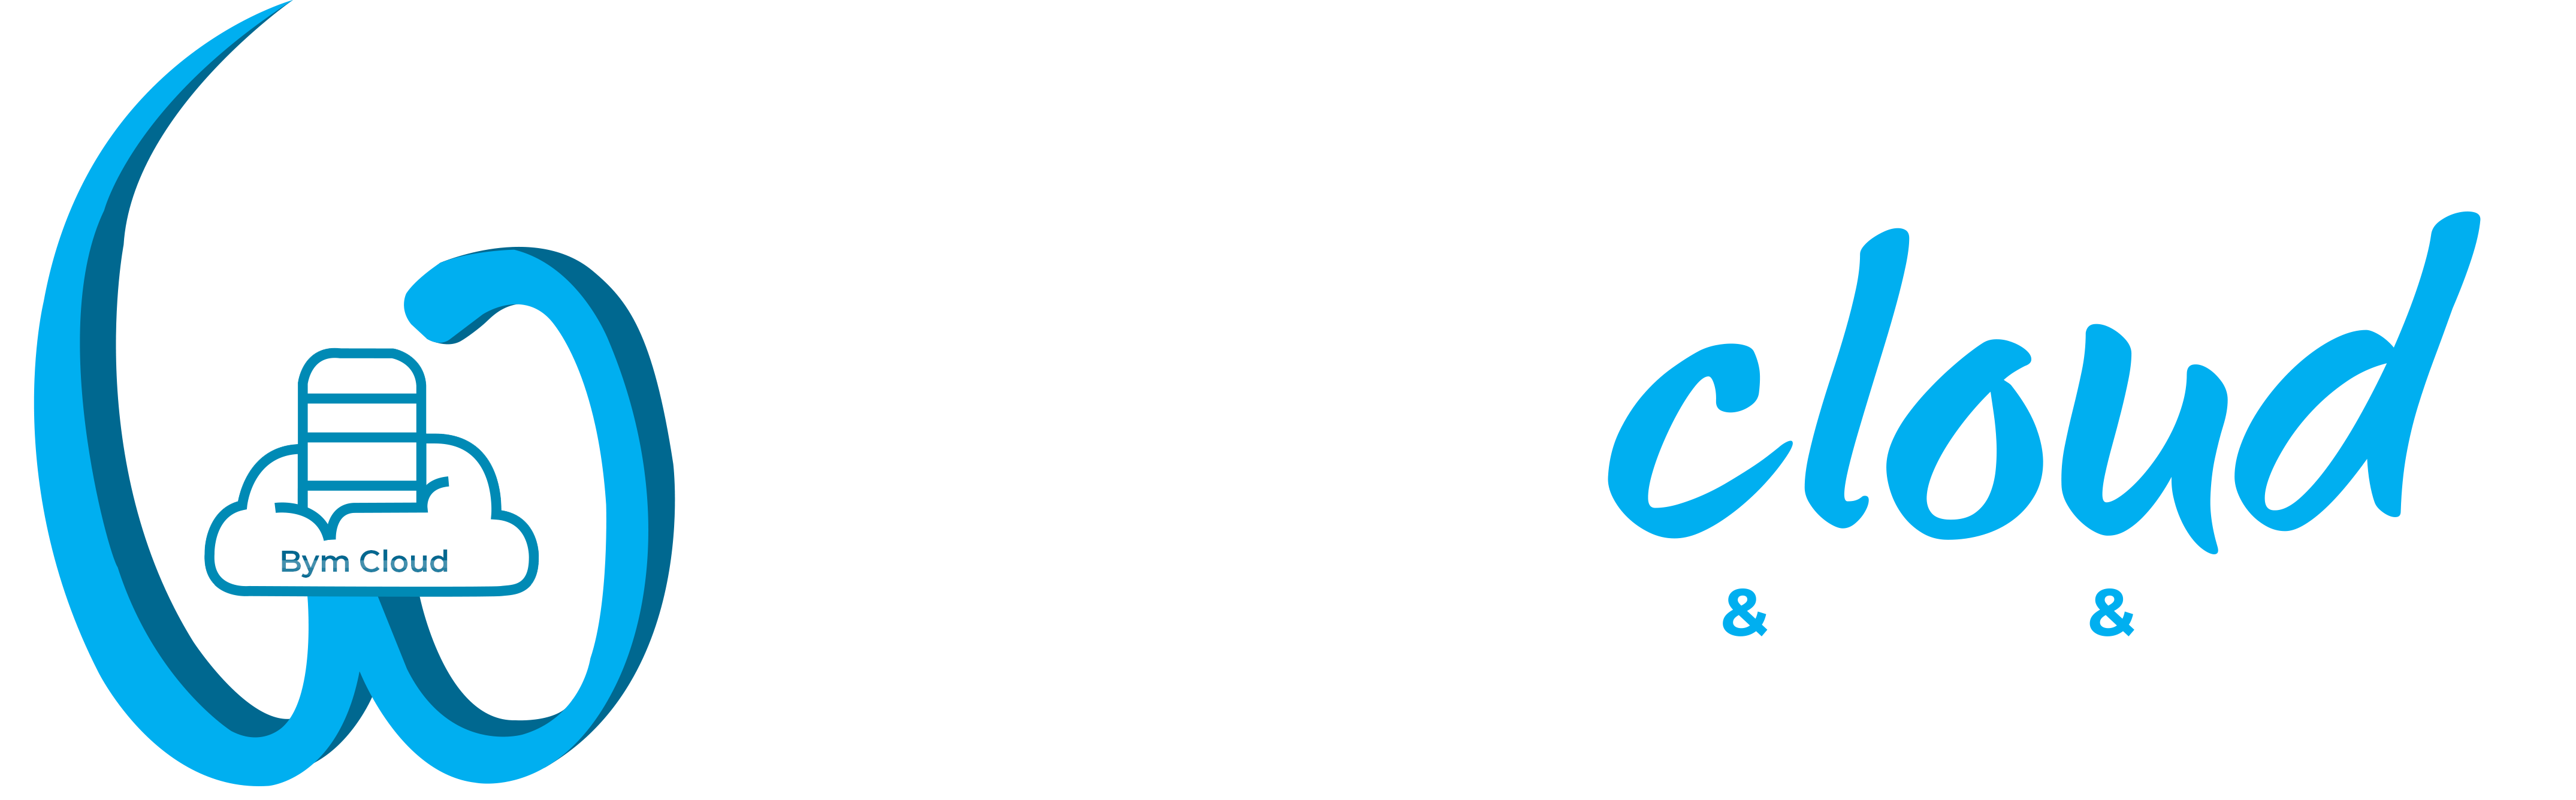 Bym Cloud Hosting Domain & Yazılım Hizmetleri